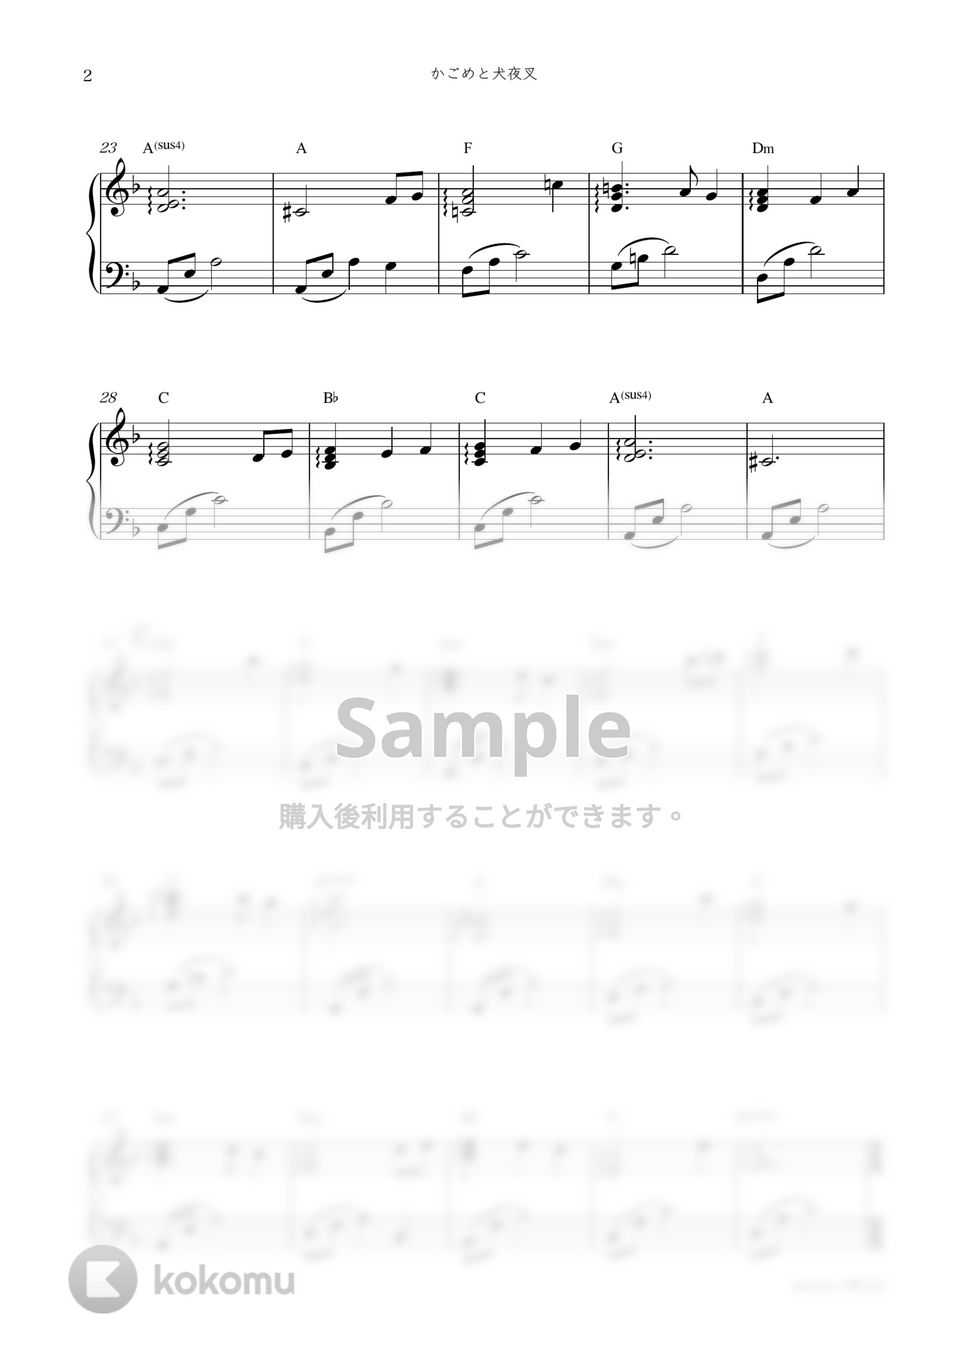 アニメ『犬夜叉』OST - かごめと犬夜叉 by sammy